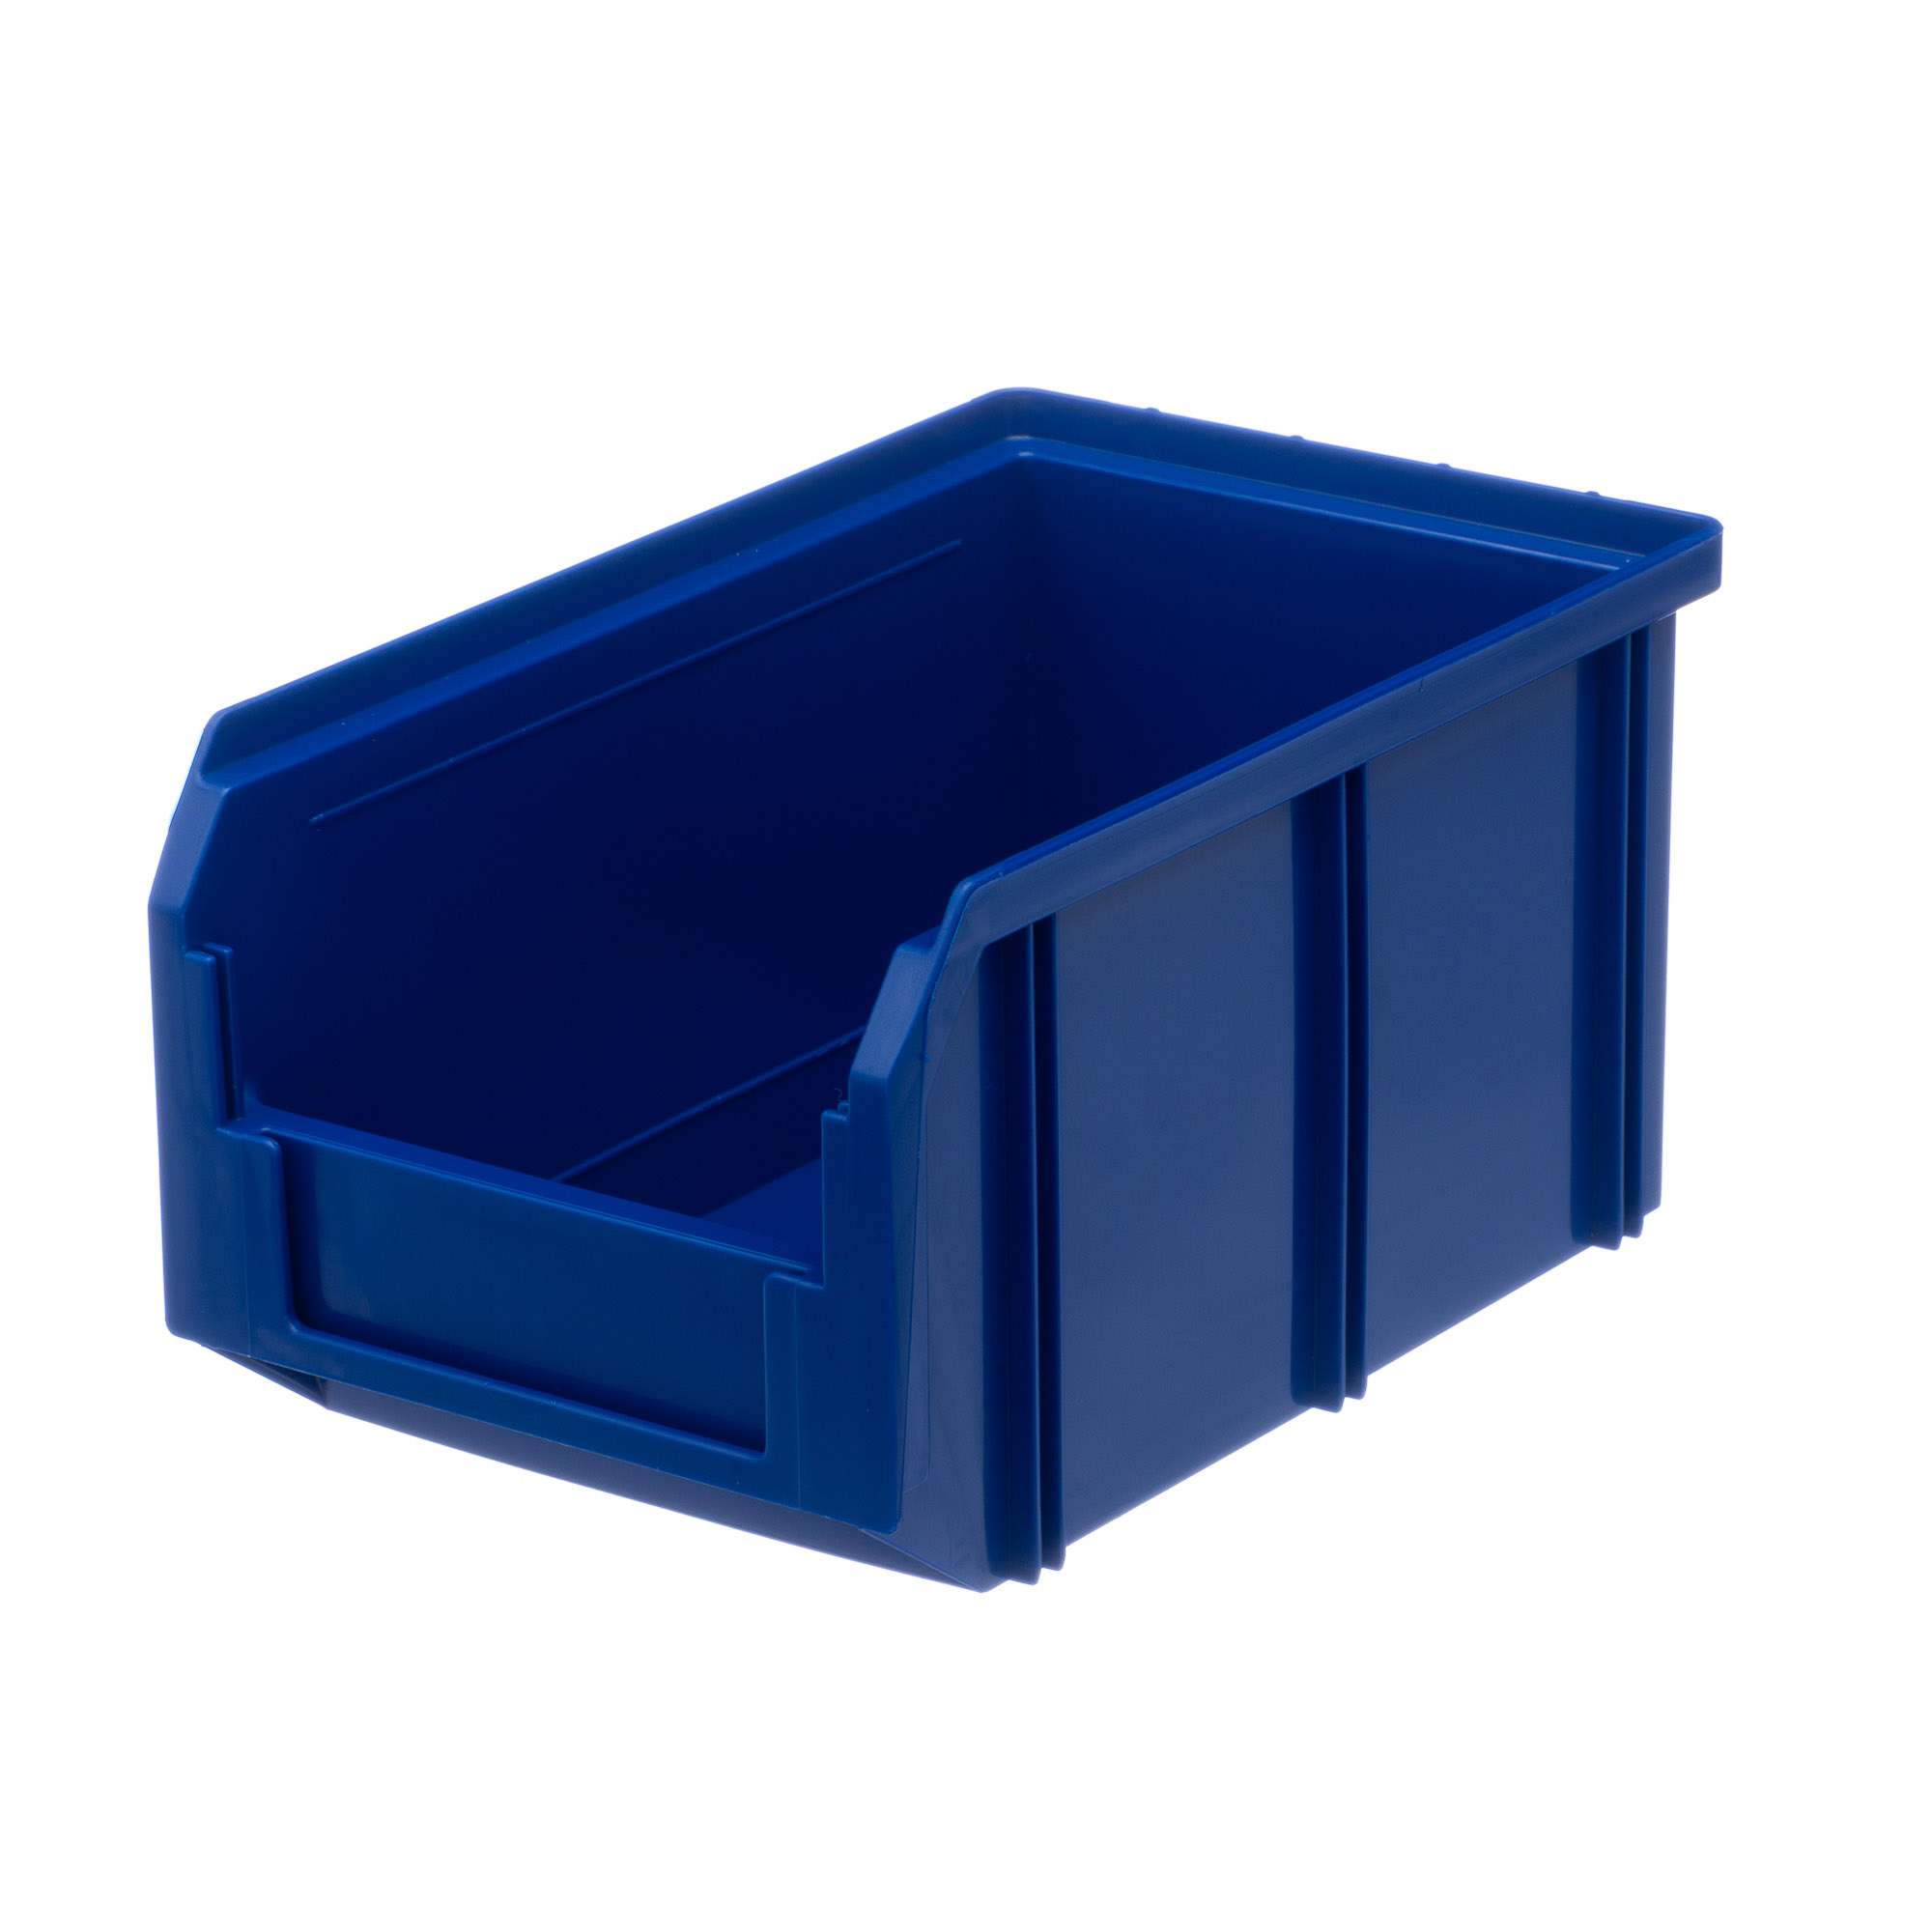 Пластиковый ящик Стелла-техник V-2-синий 234х149х120мм, 3,8 литра сумка спортивная на молнии наружный карман длинный ремень синий